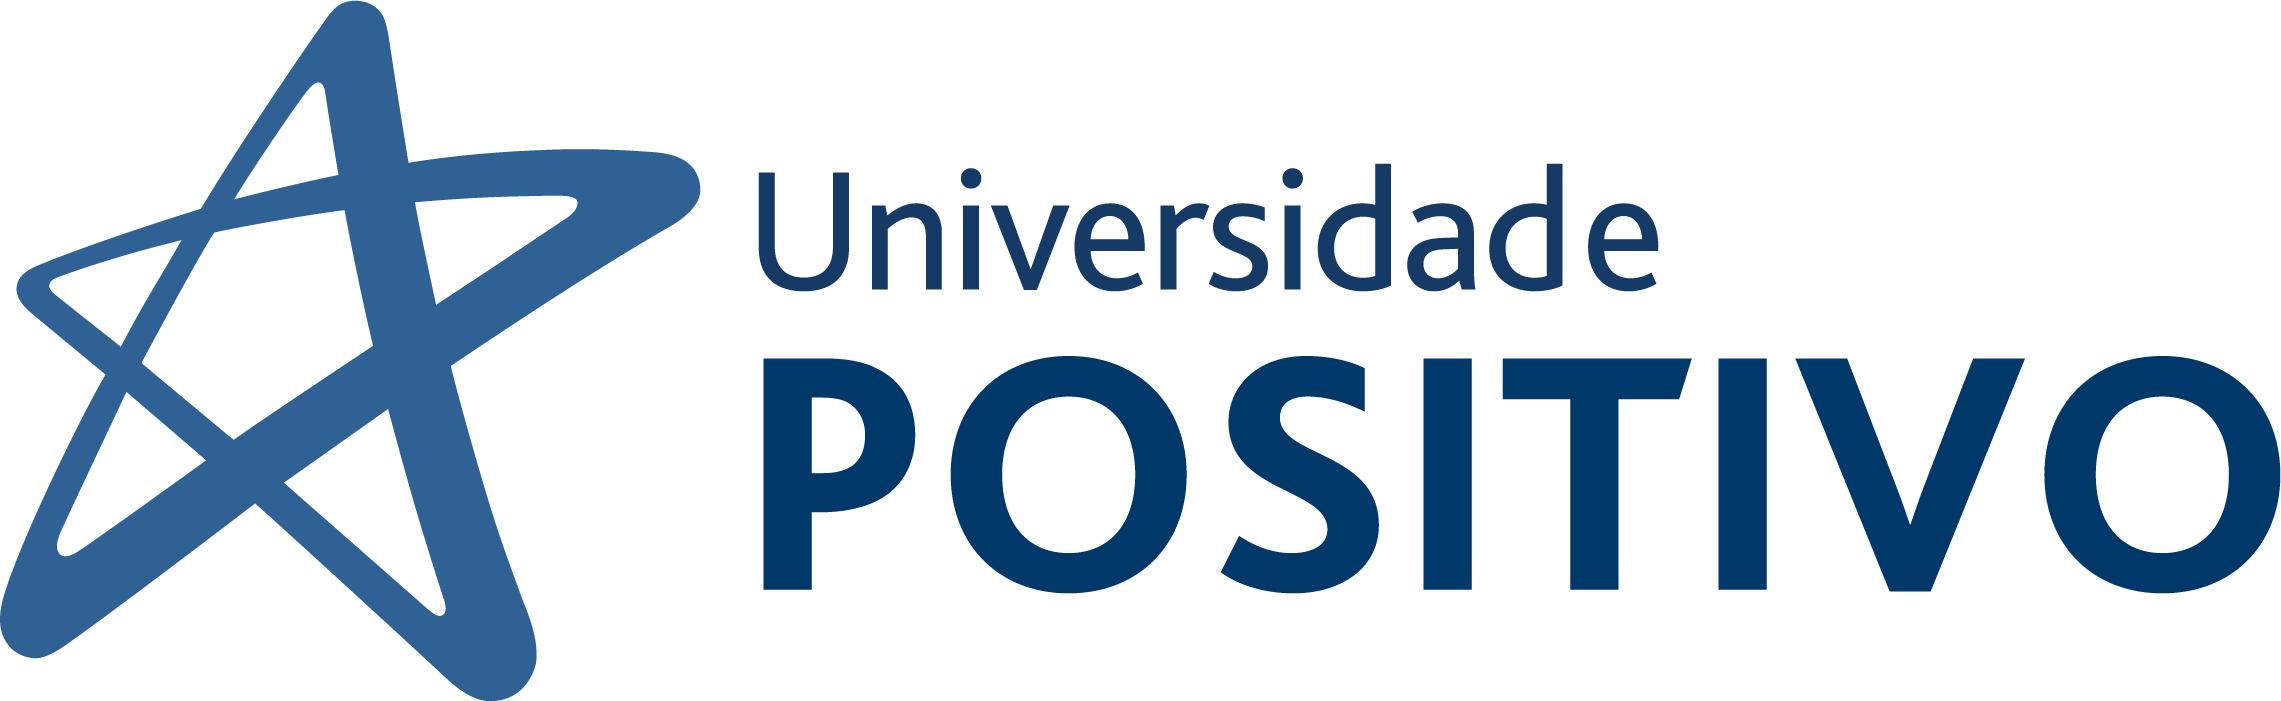 Universidade Positivo UP - Campus Faculdade Positivo Londrina